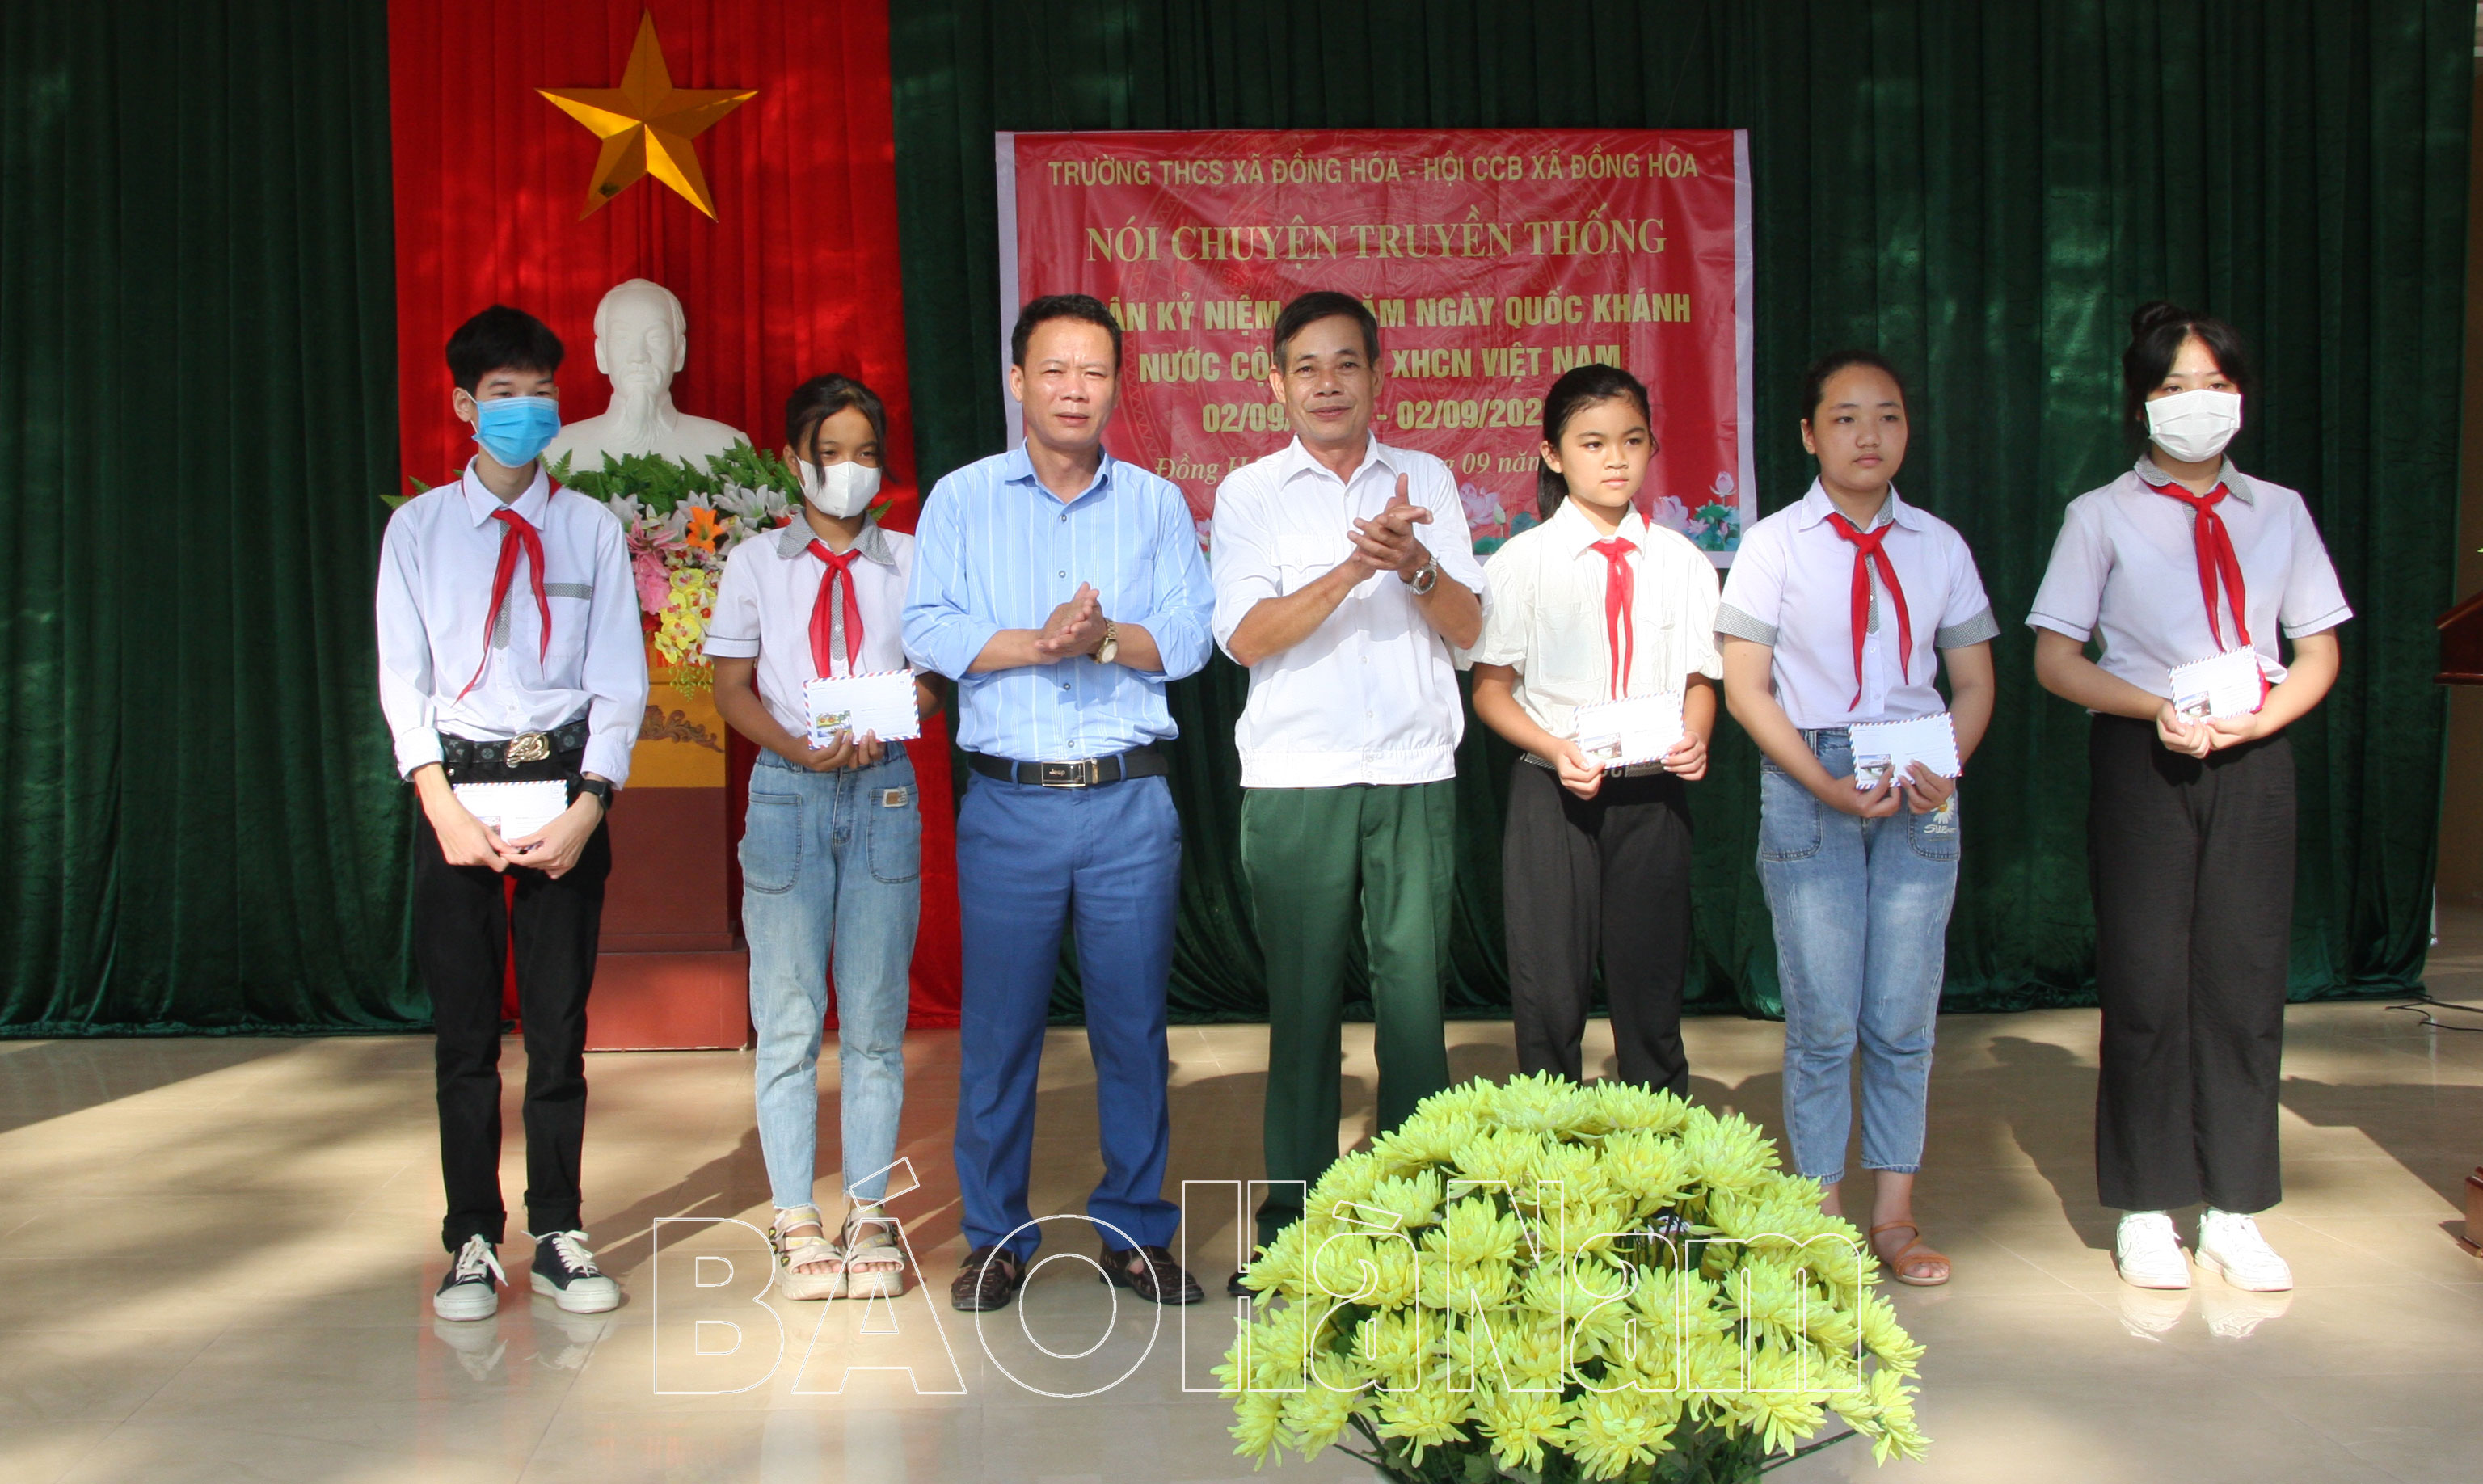 Hơn 600 thầy trò Trường Trung học cơ sở Đồng Hóa được nghe nói chuyện truyền thống QĐND Việt Nam